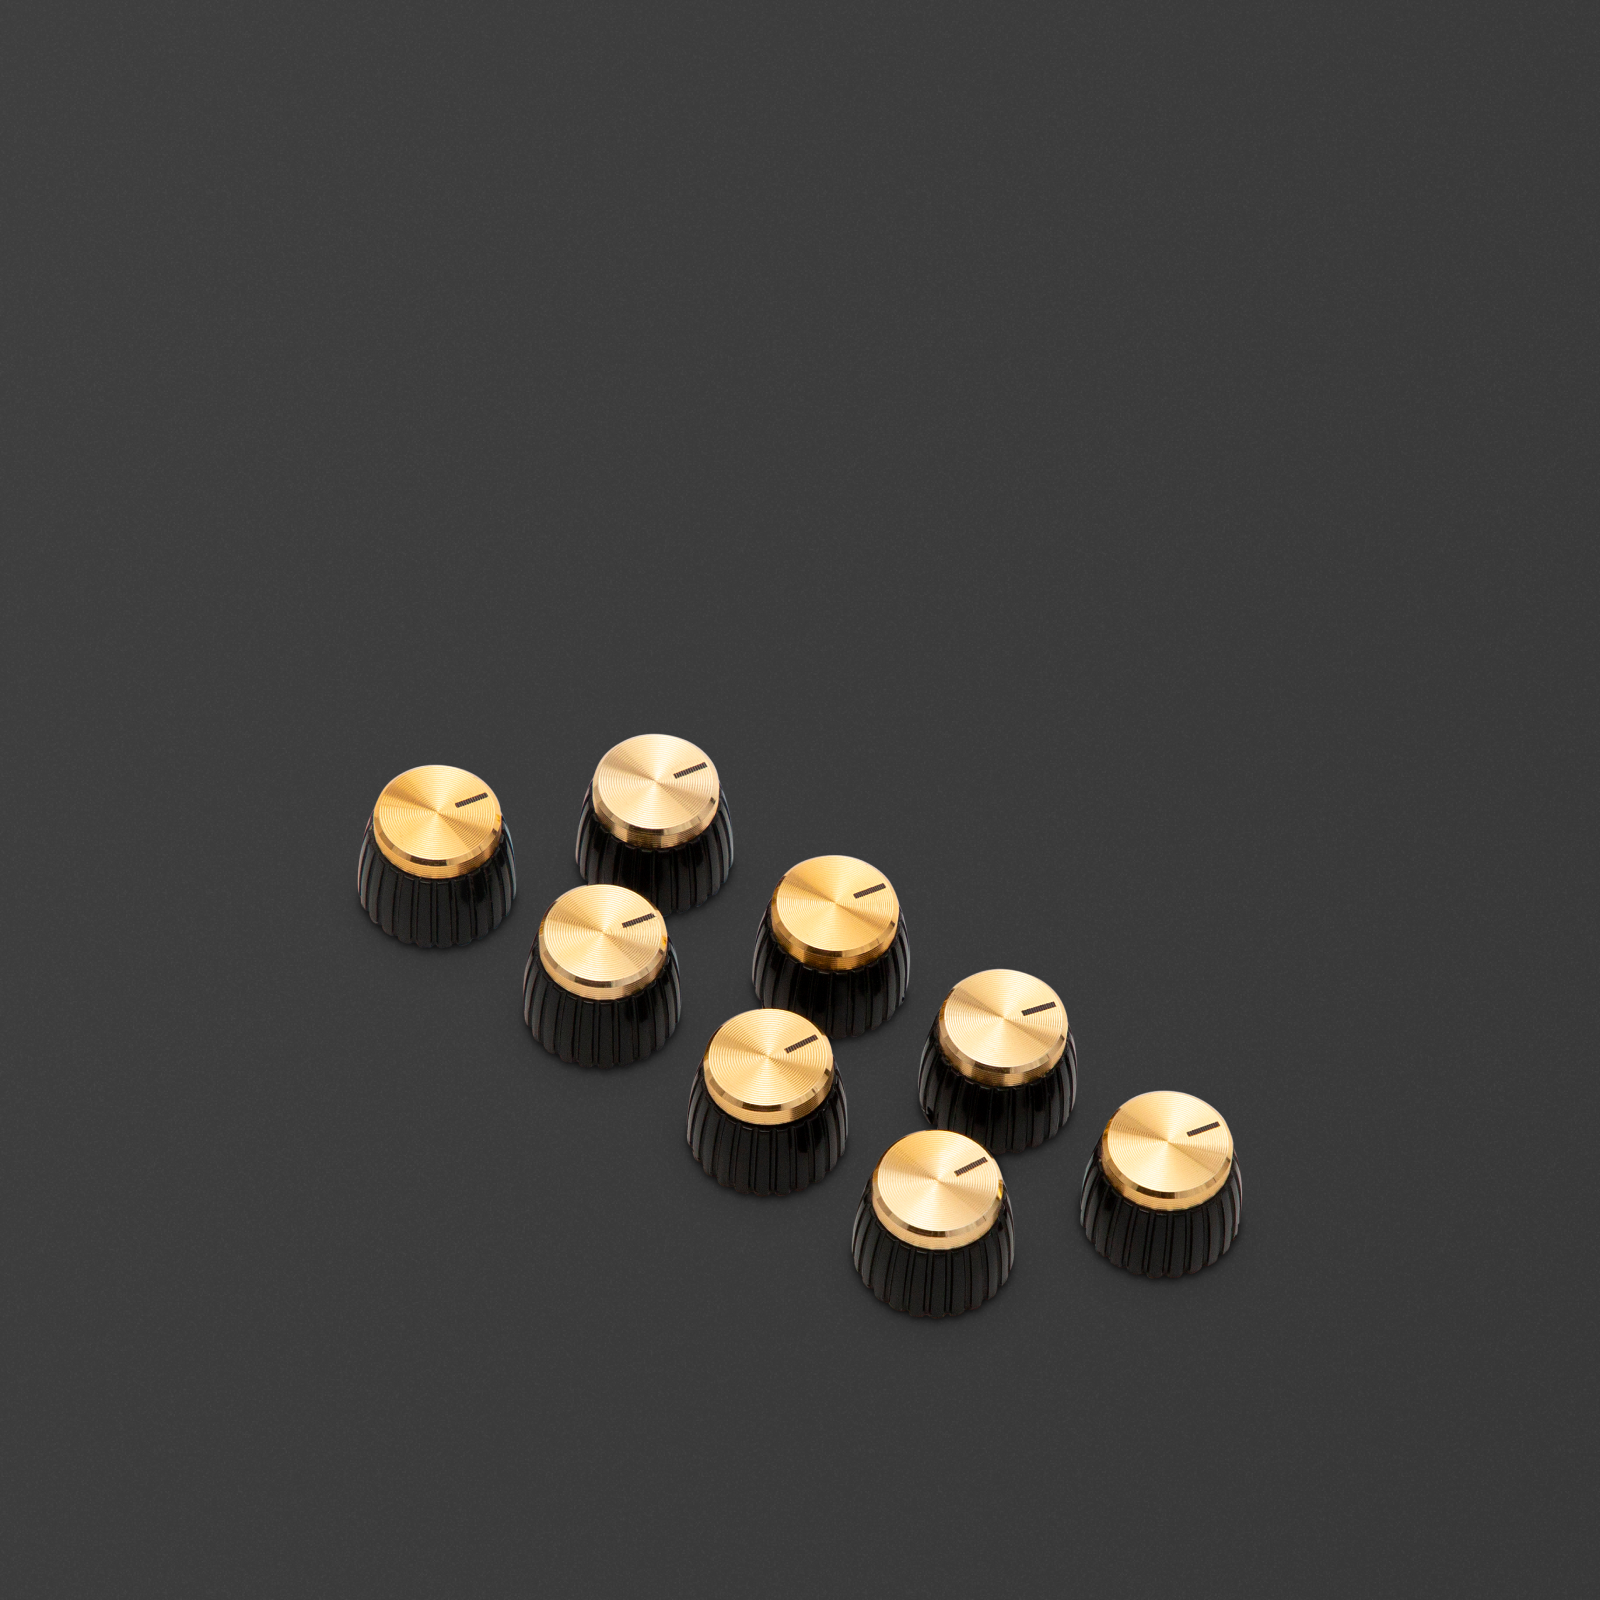 Botones dorados de repuesto para la serie AVT.